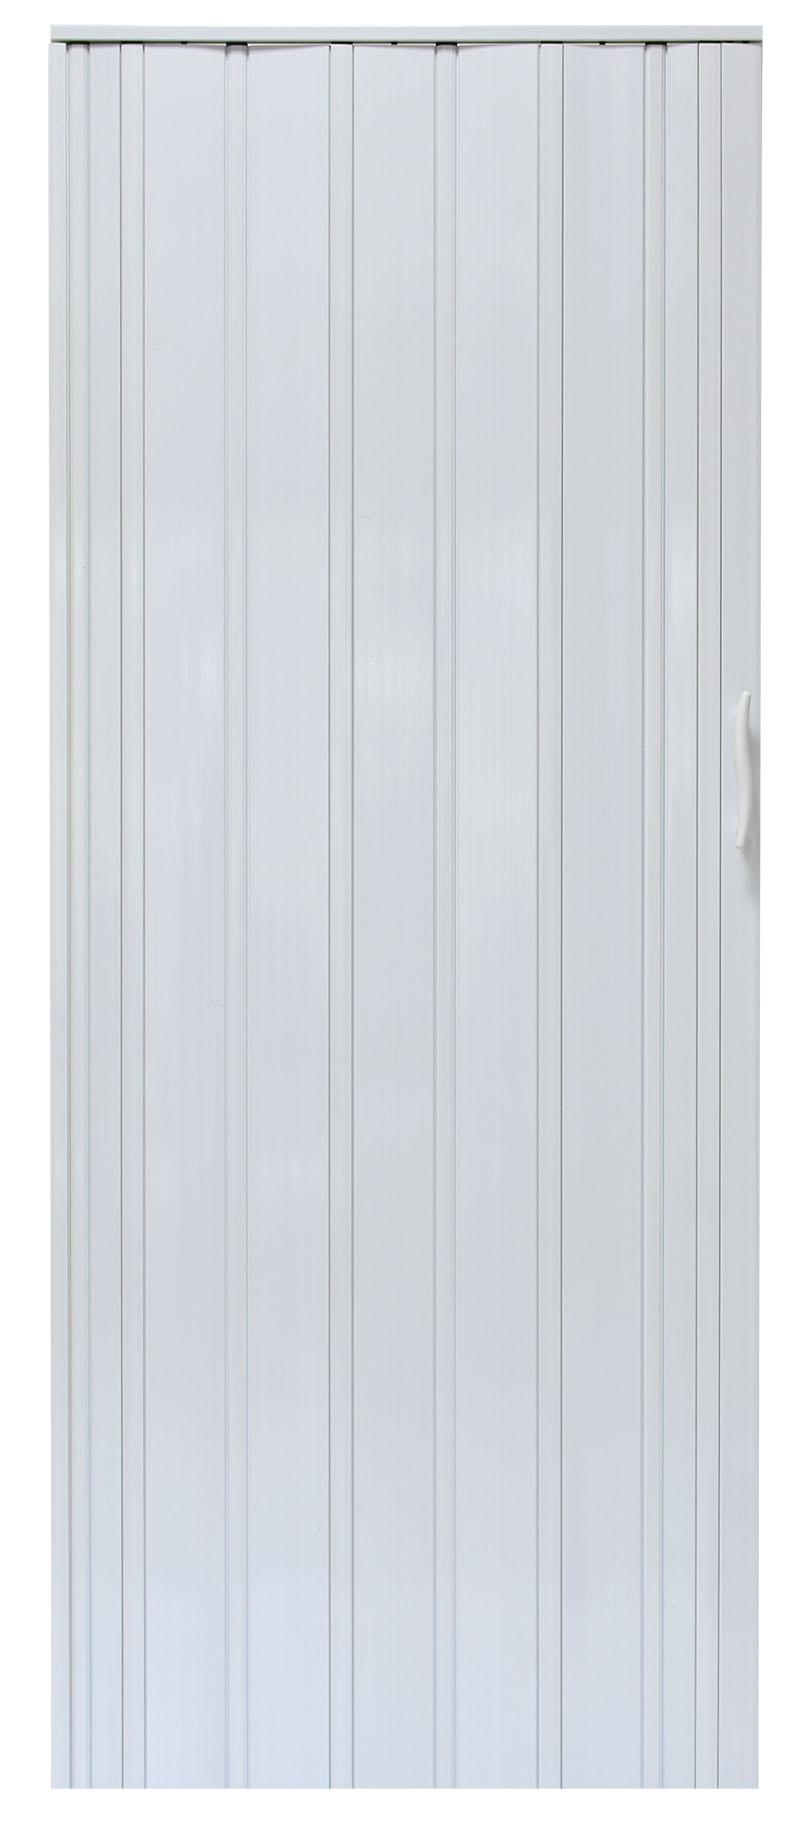 Drzwi harmonijkowe 008P - 80 cm - 49 biały dąb mat G